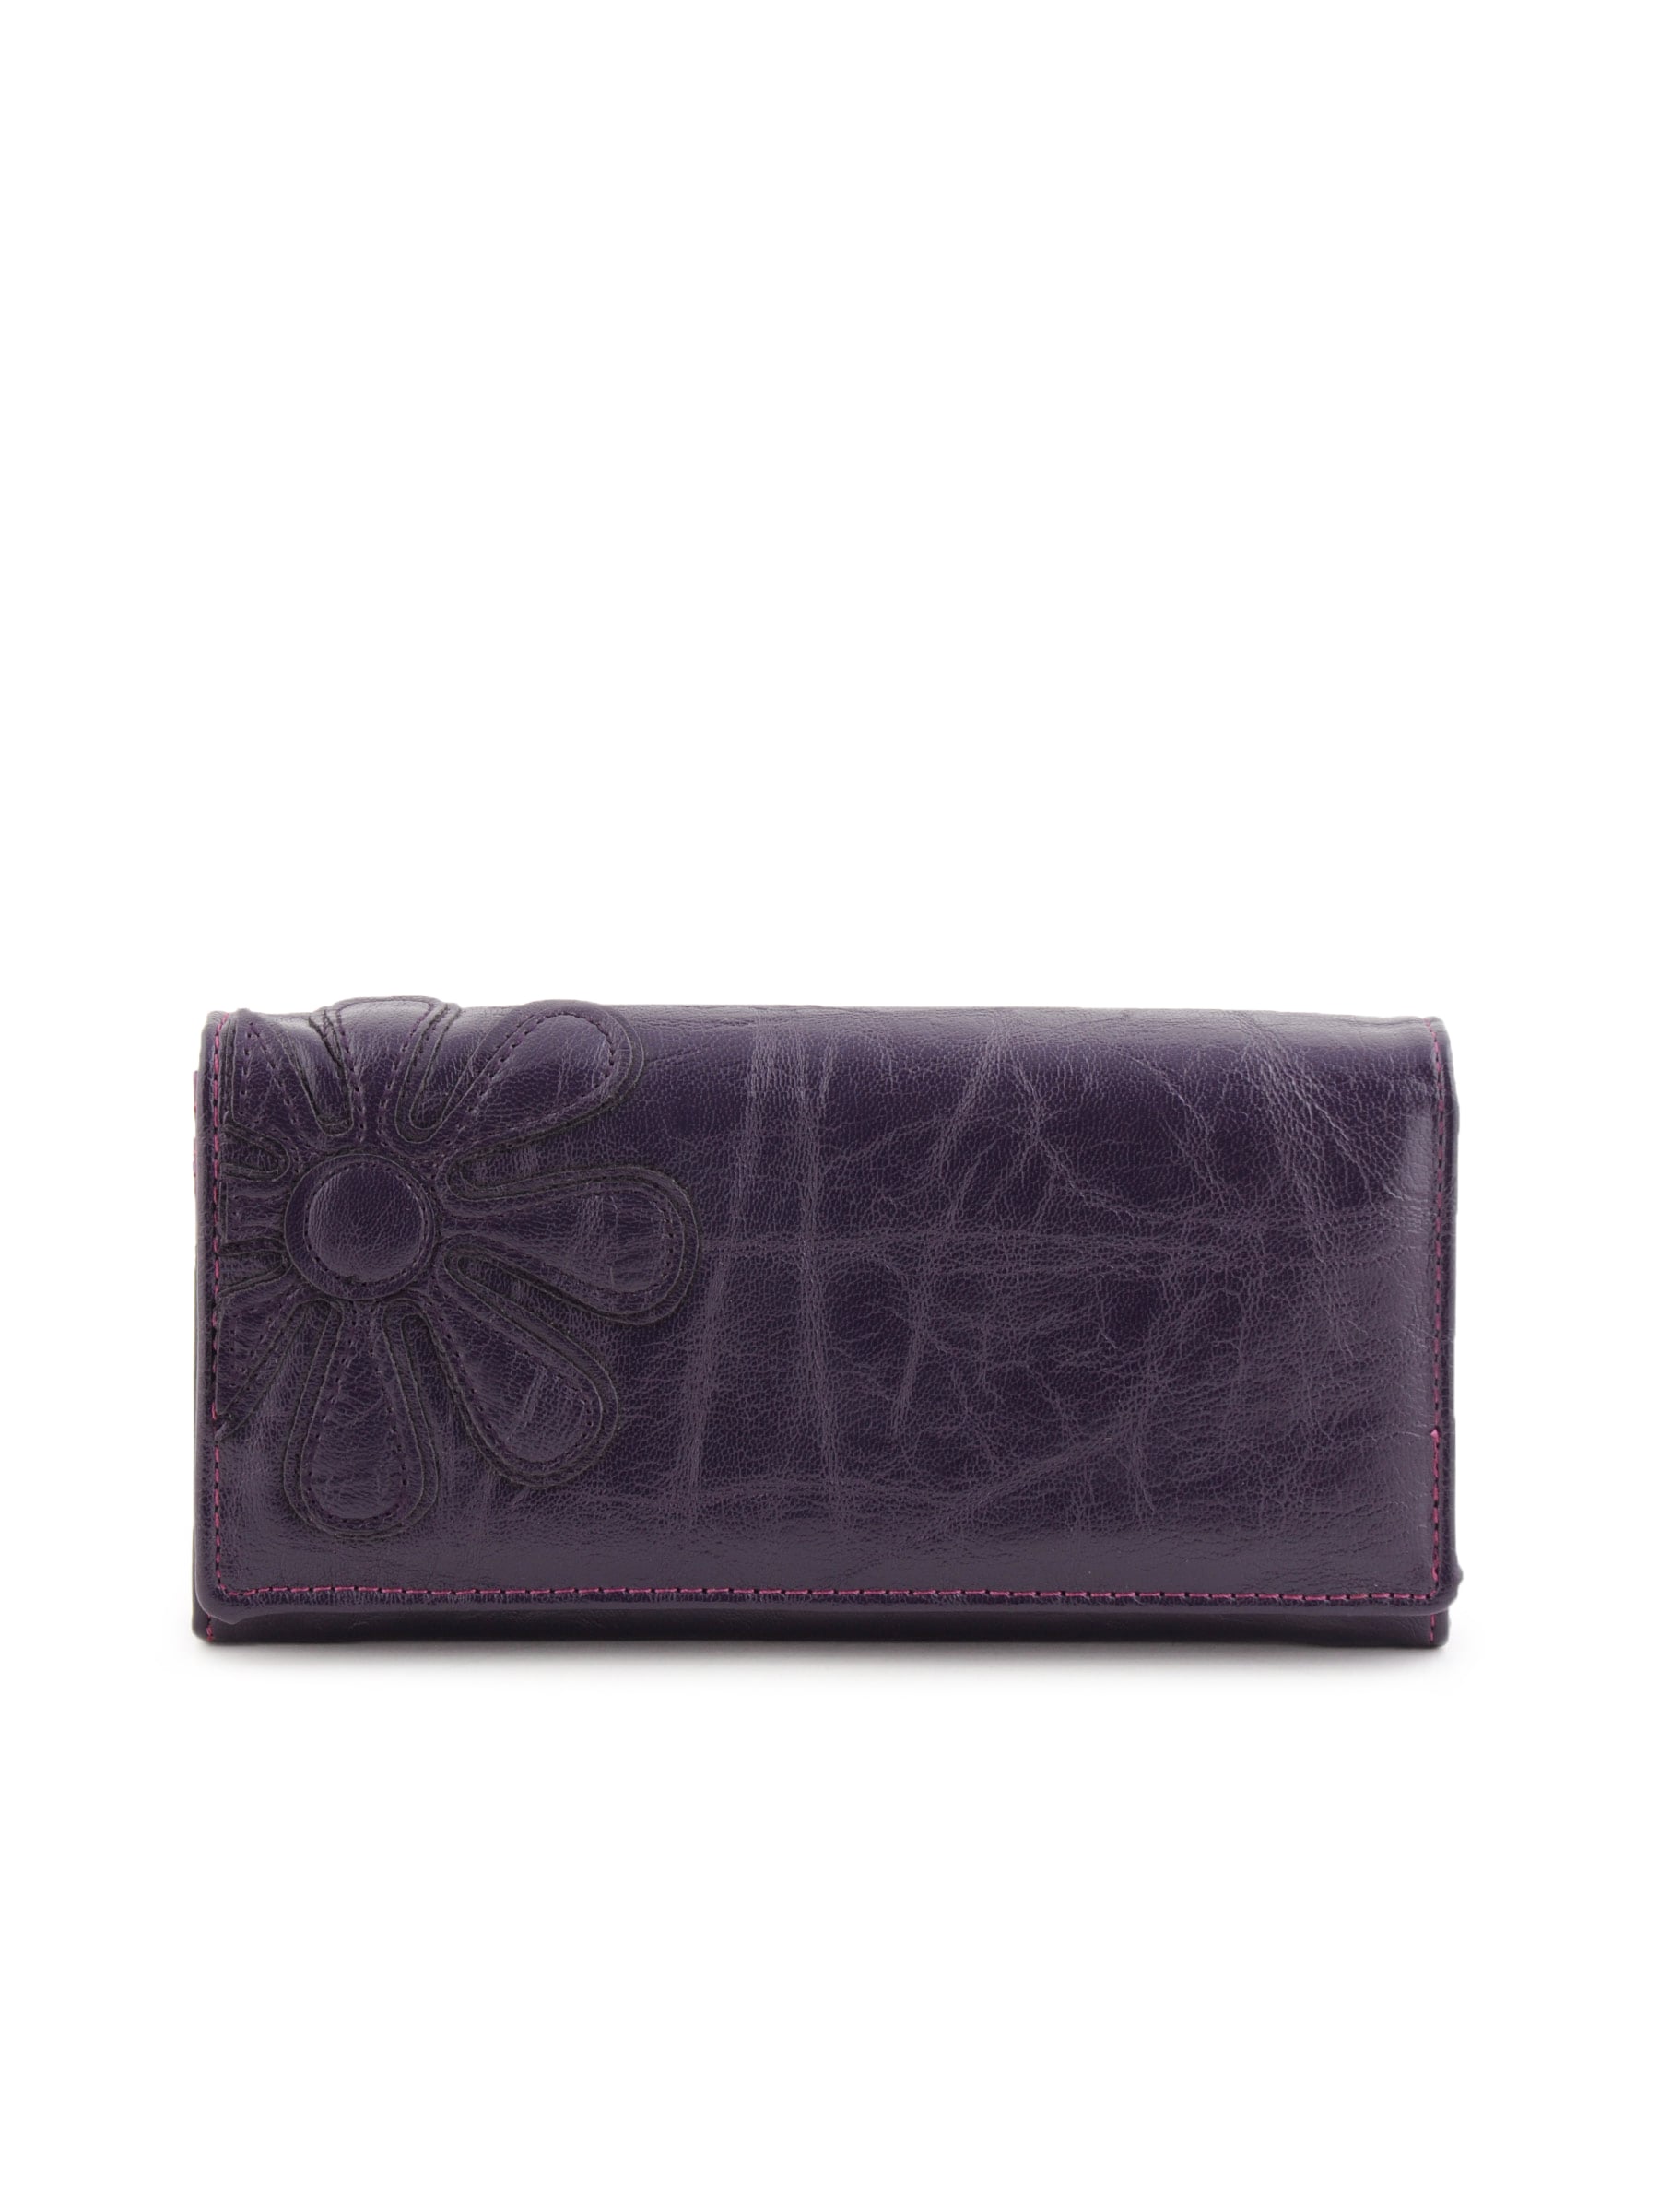 Lino Perros Women Solid Purple Wallet